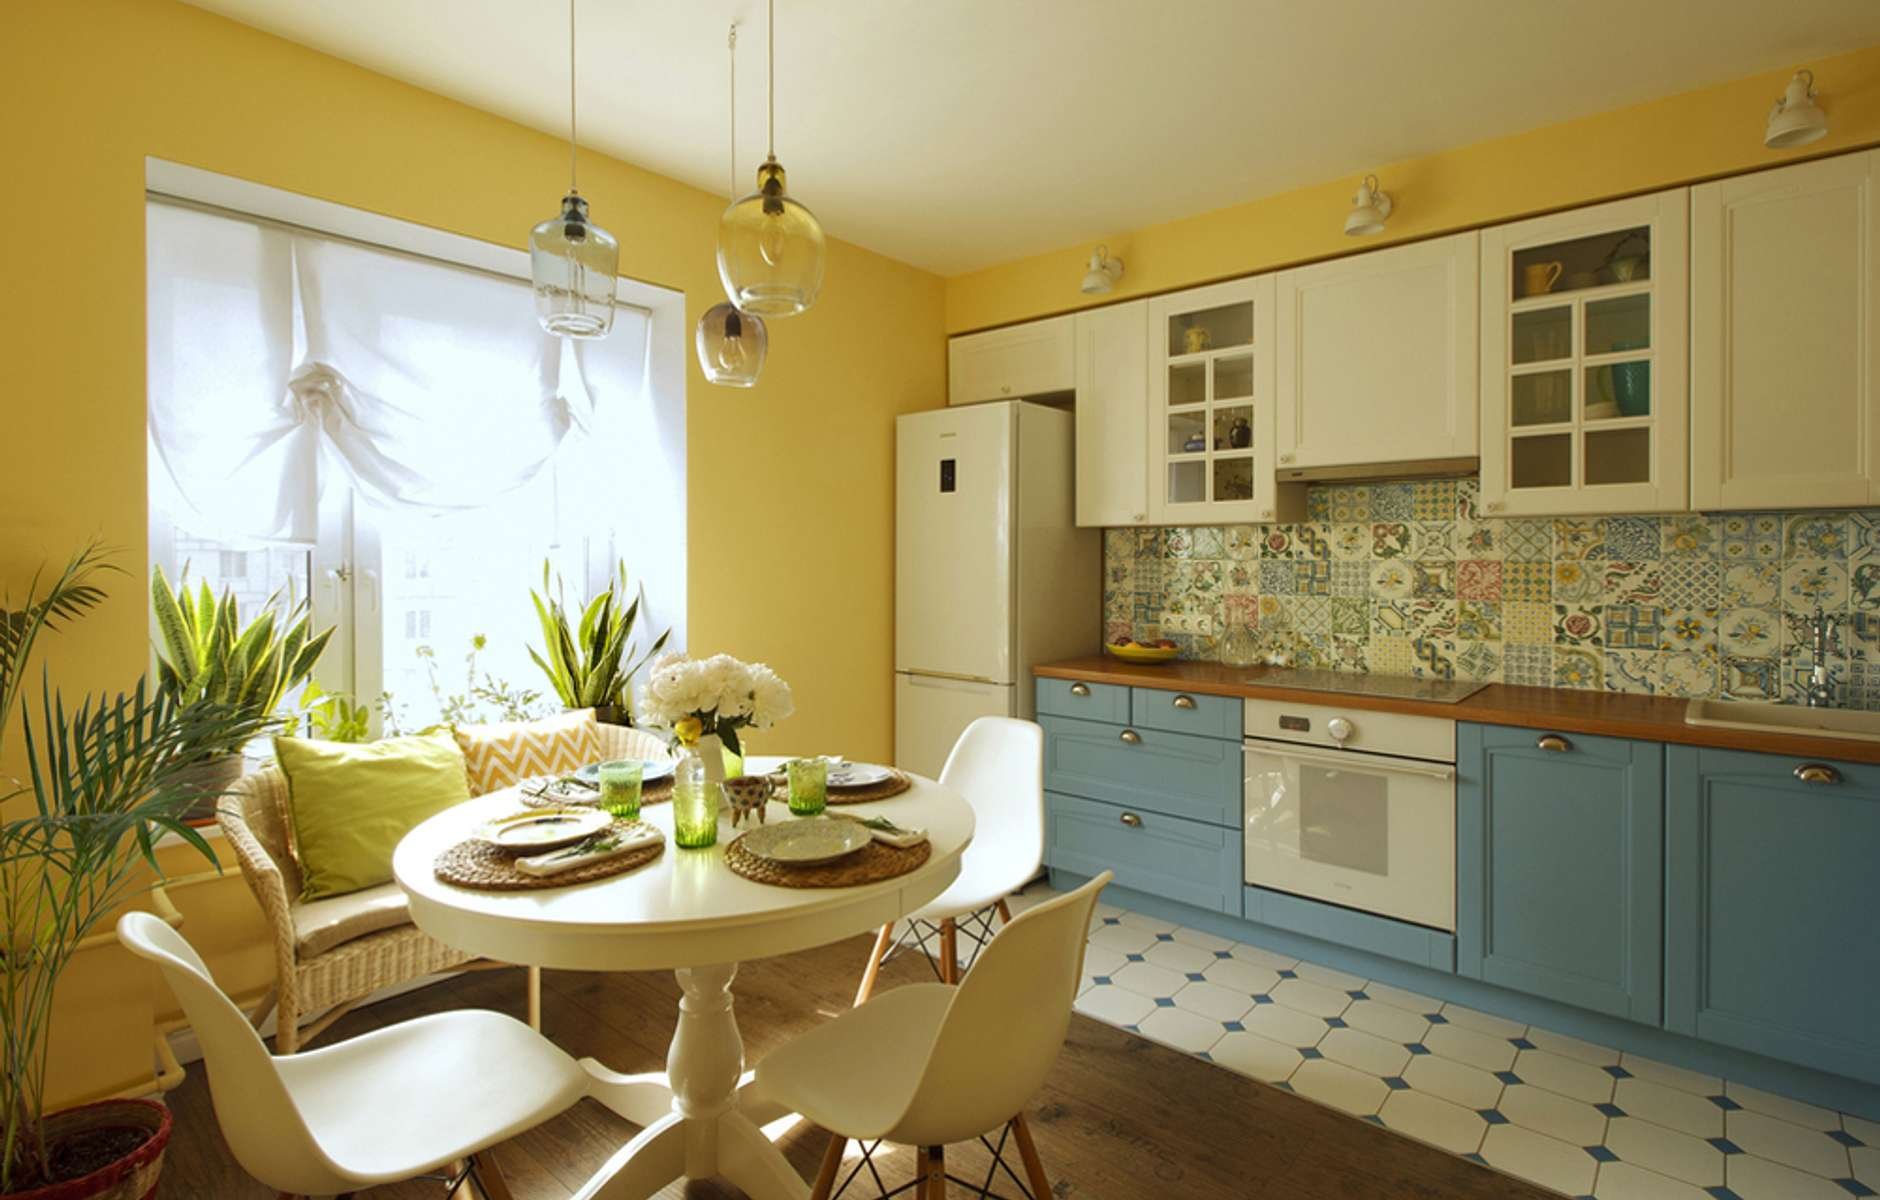 Как желтый цвет в интерьере кухни влияет на настроение и восприятие пространства?